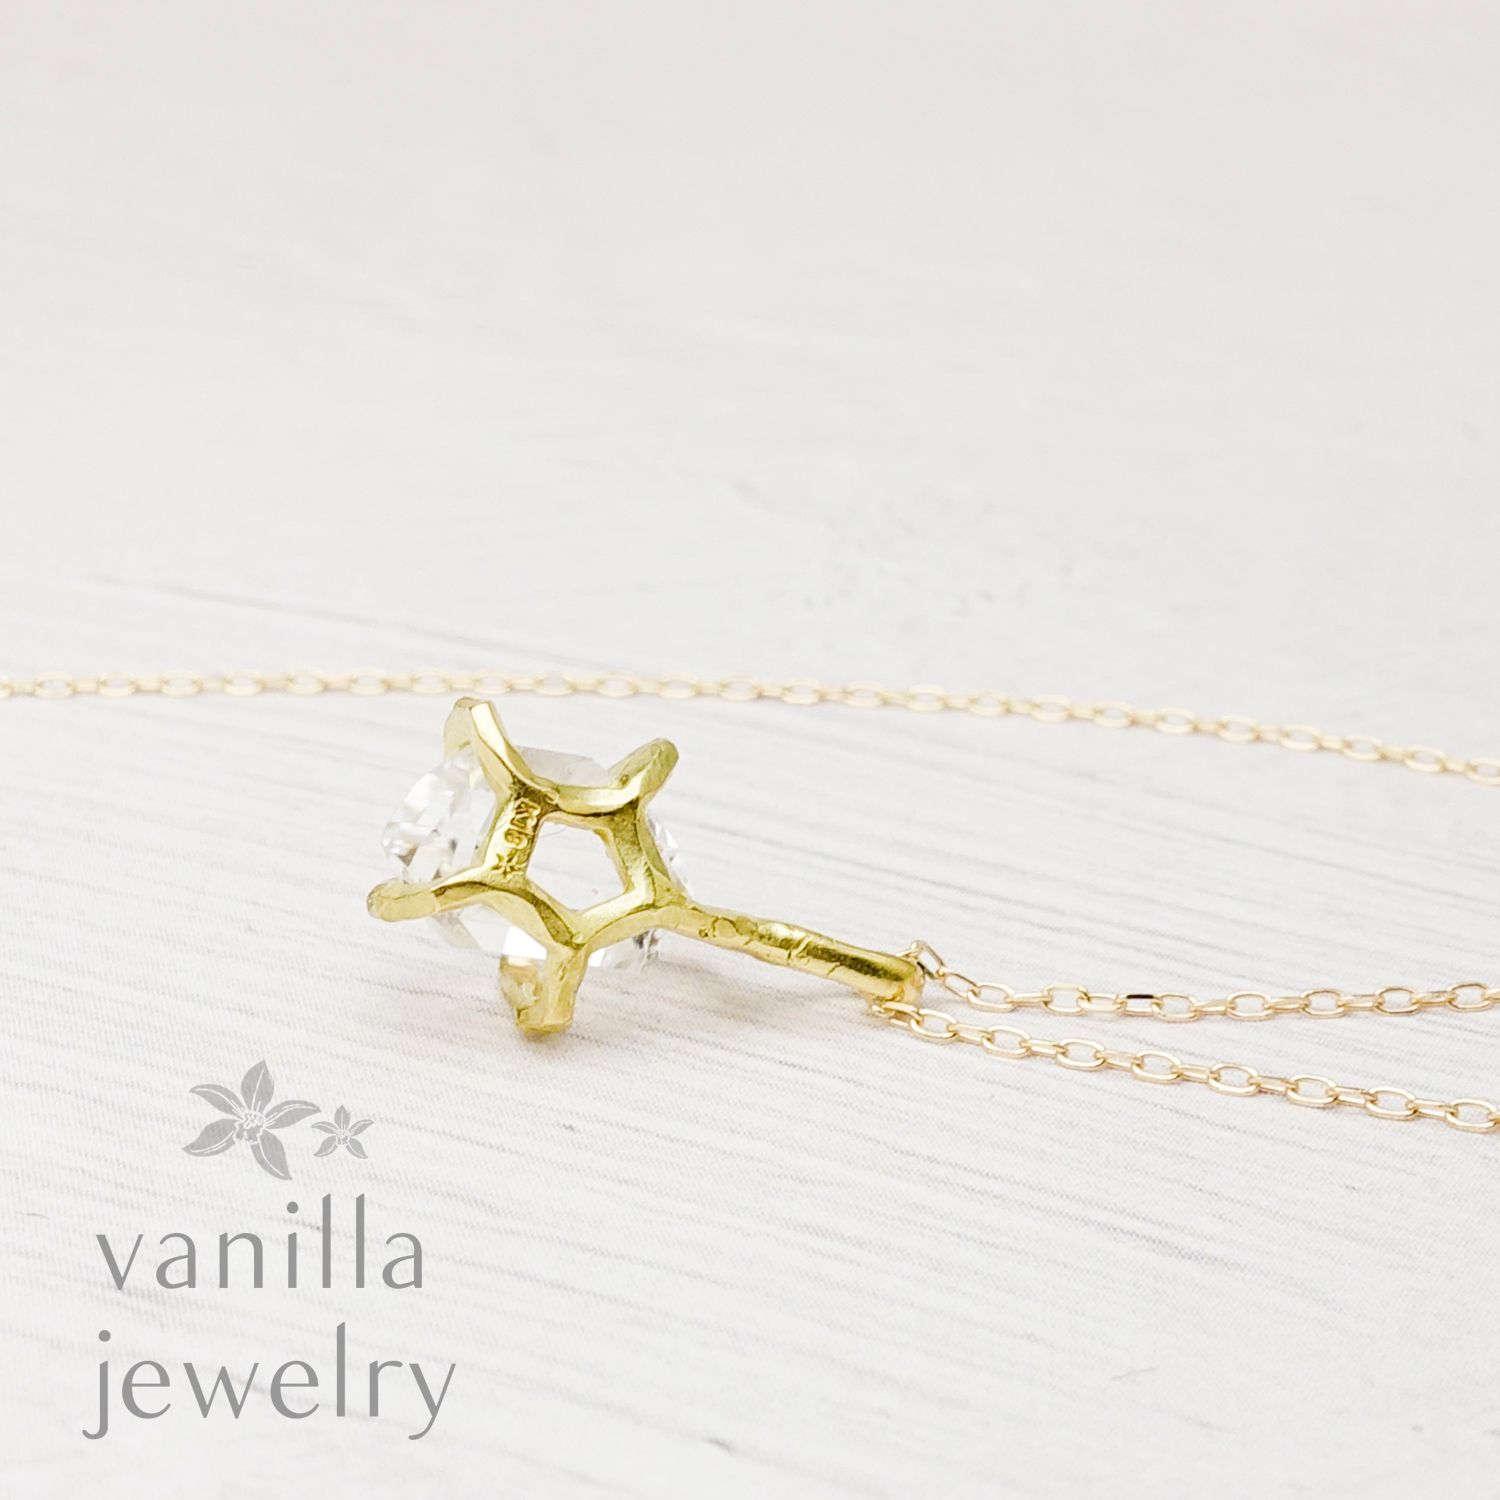 vanilla jewelry - Graily(グレイリー) ハーキマーダイヤモンド K18 ...